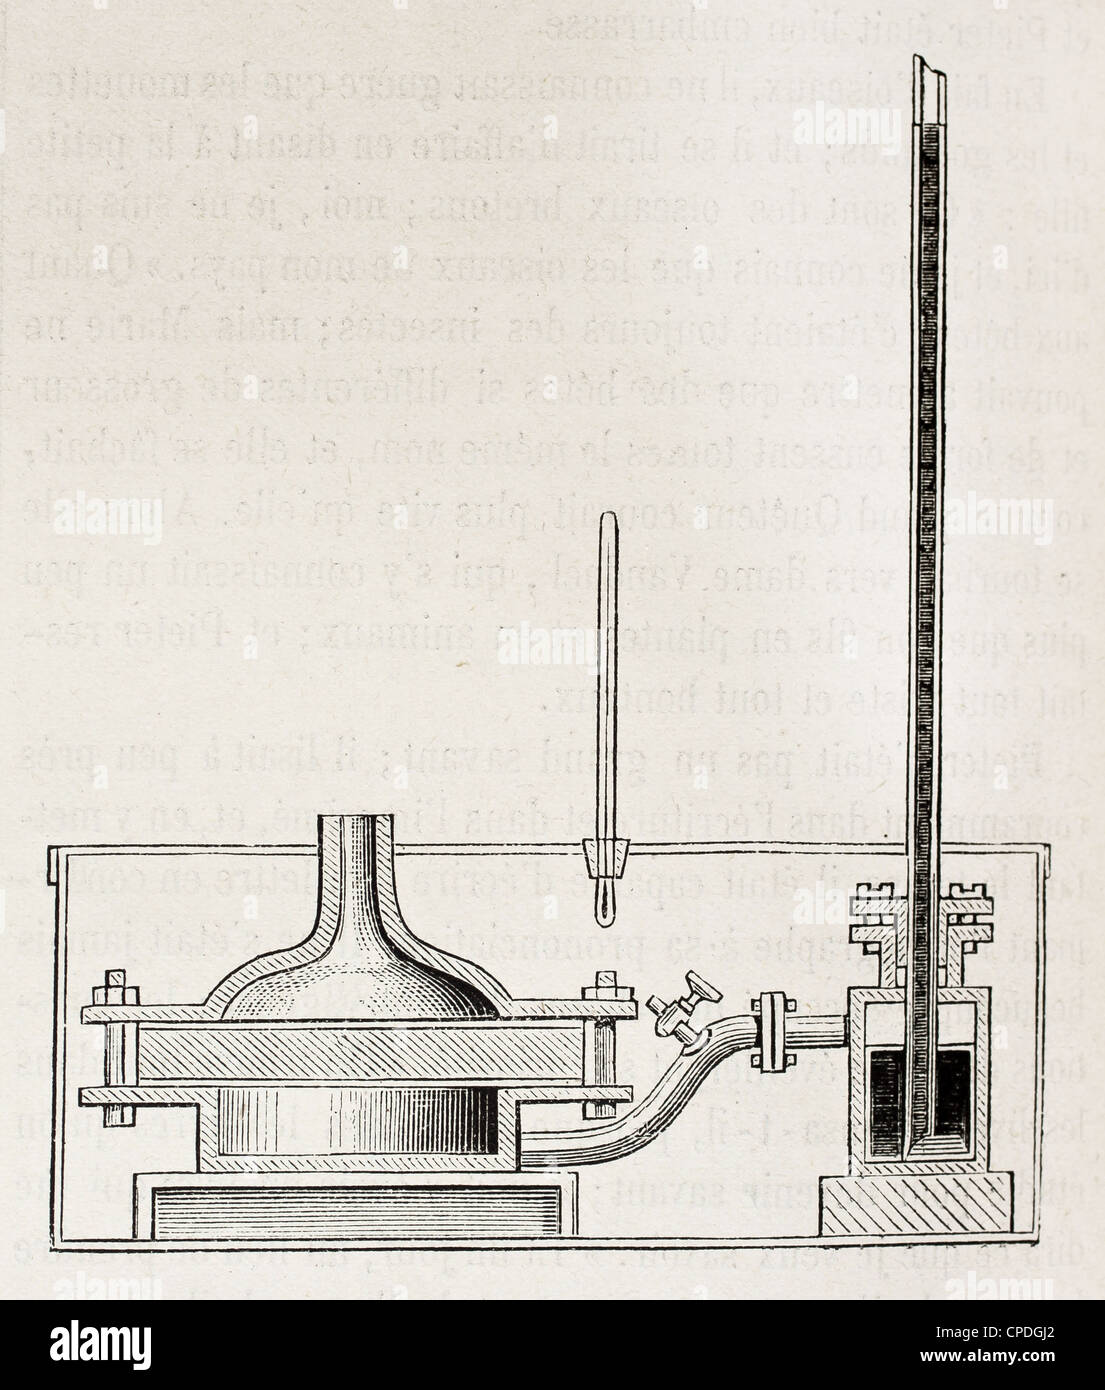 Infiltrazione capillare apparecchiatura vecchia illustrazione schematica Foto Stock